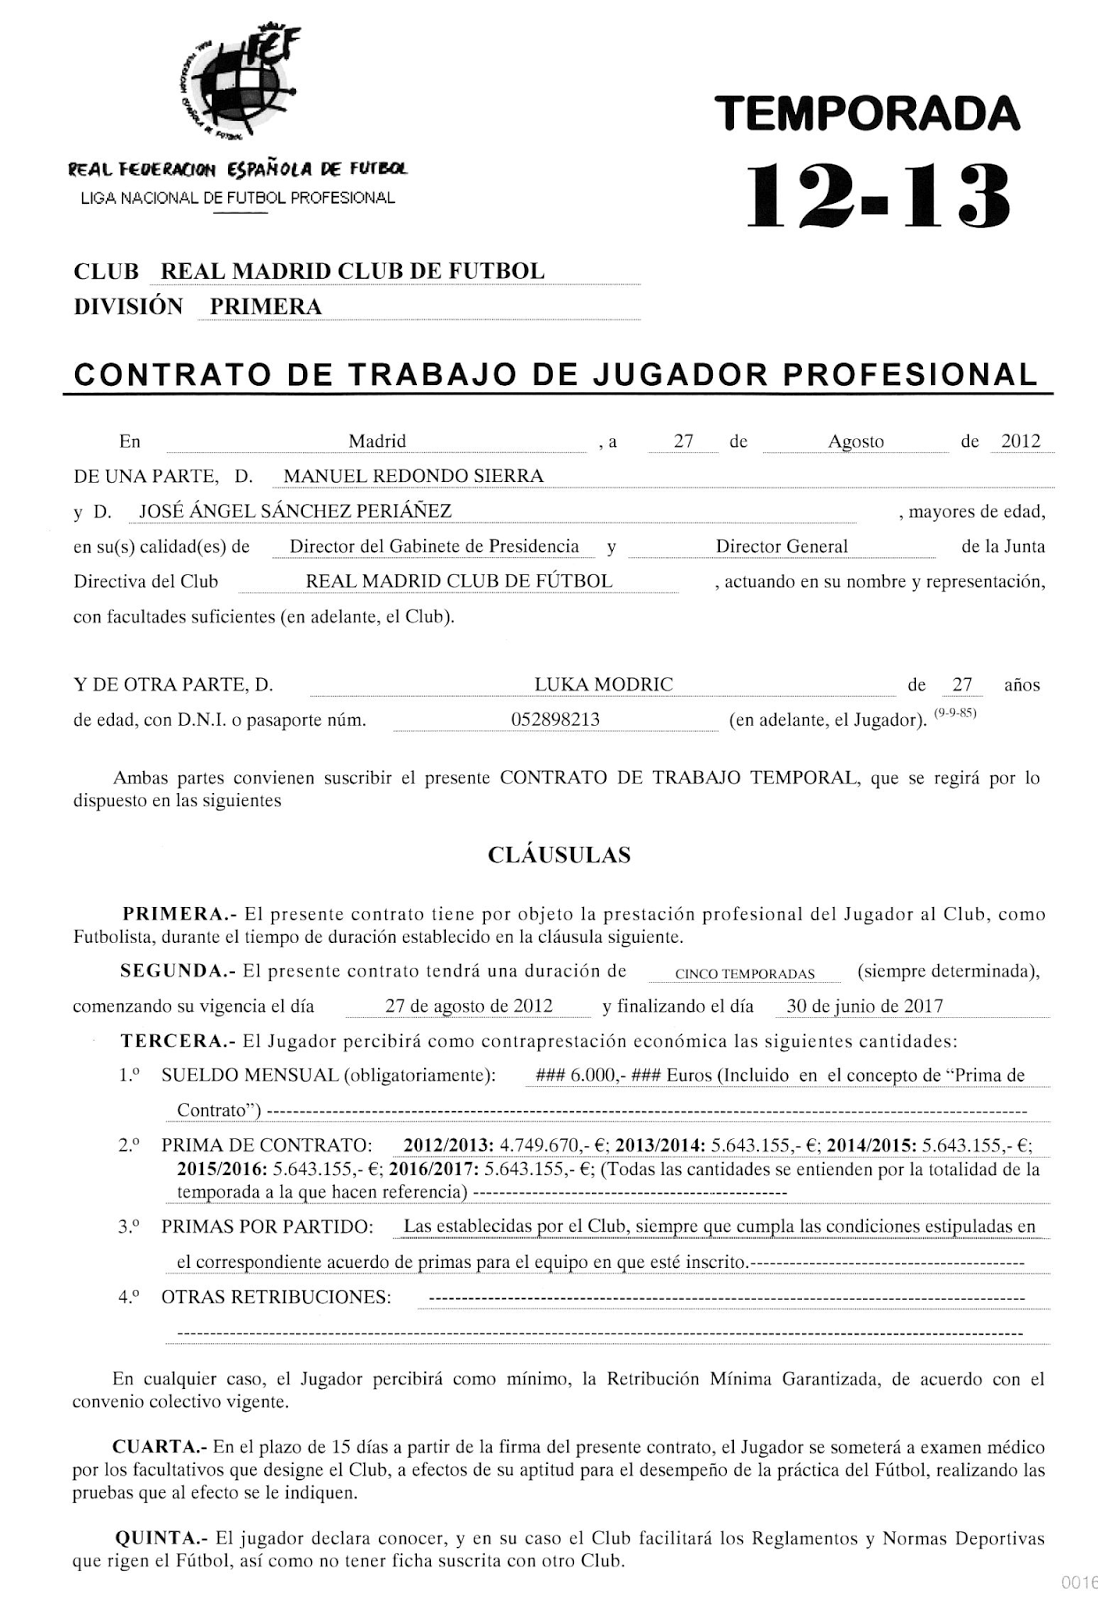 DerechoWeb: Contrato de Luka Modric con el Real Madrid - Contrato de  prestación de servicios como jugador profesional.